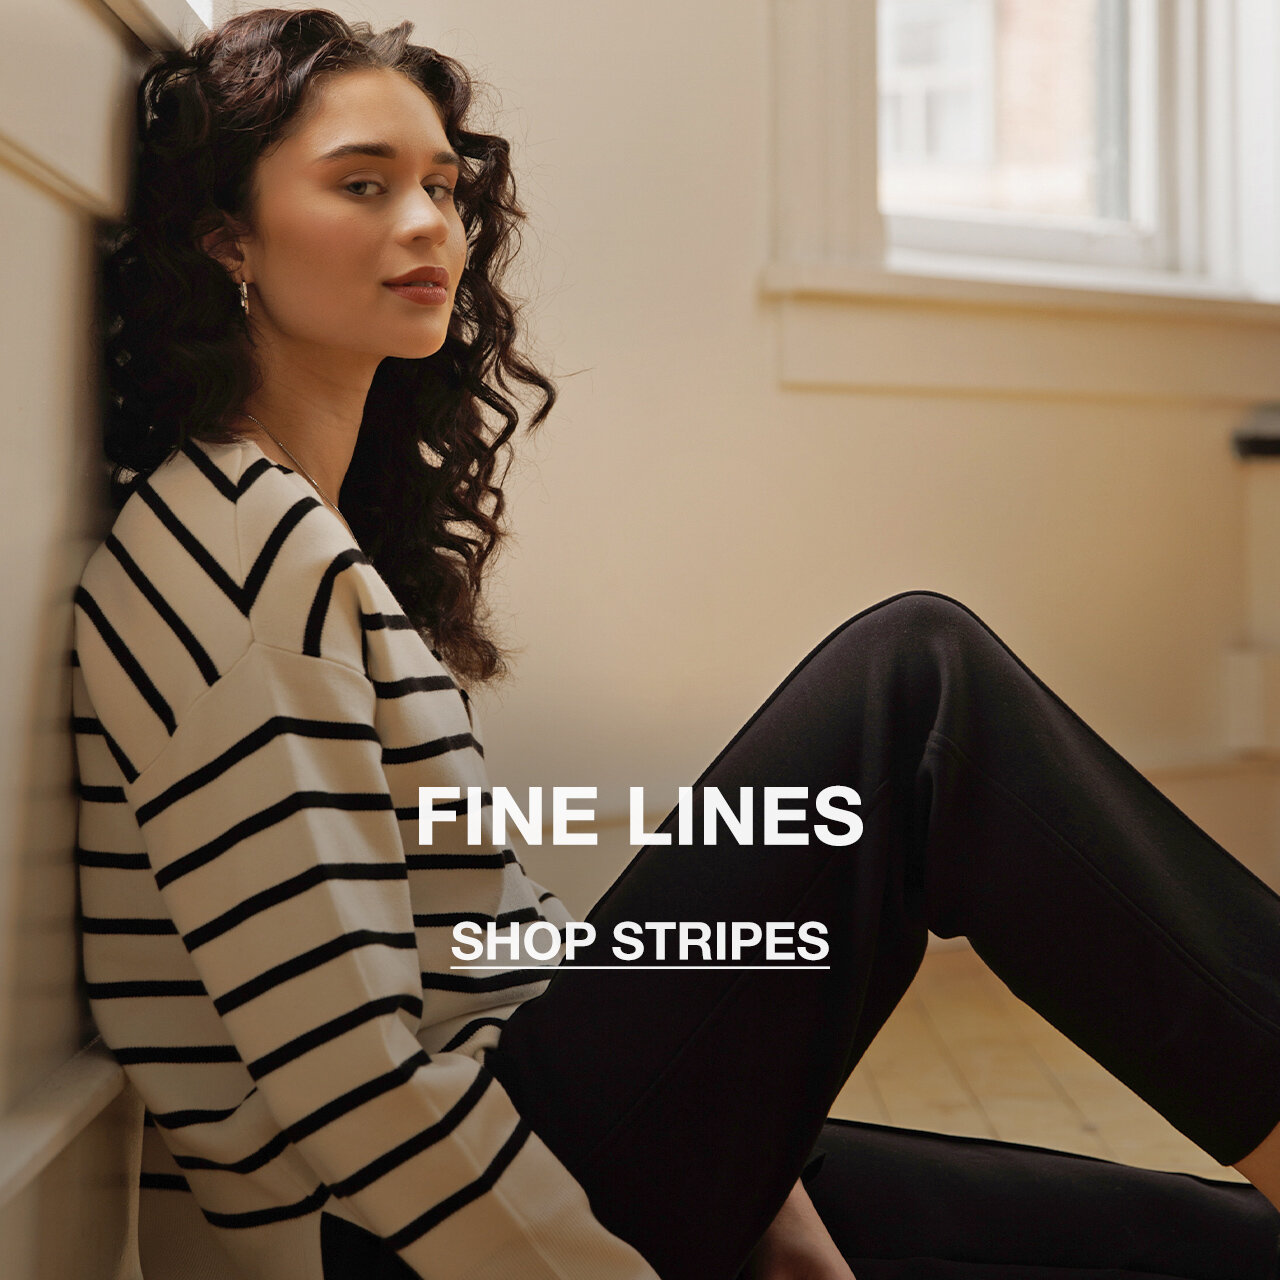 Shop Stripes